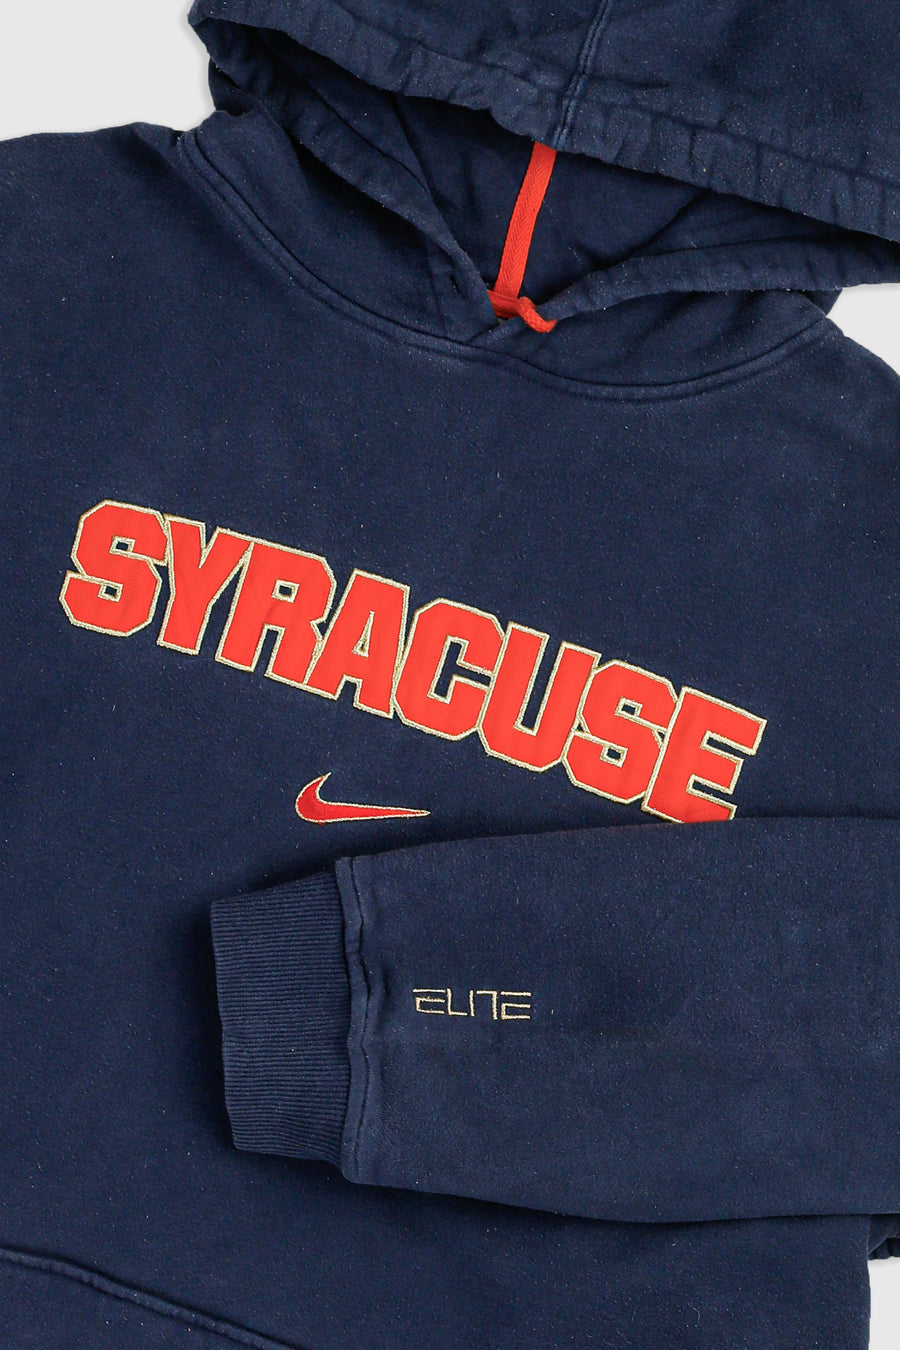 Vintage Syracuse Sweatshirt - XL